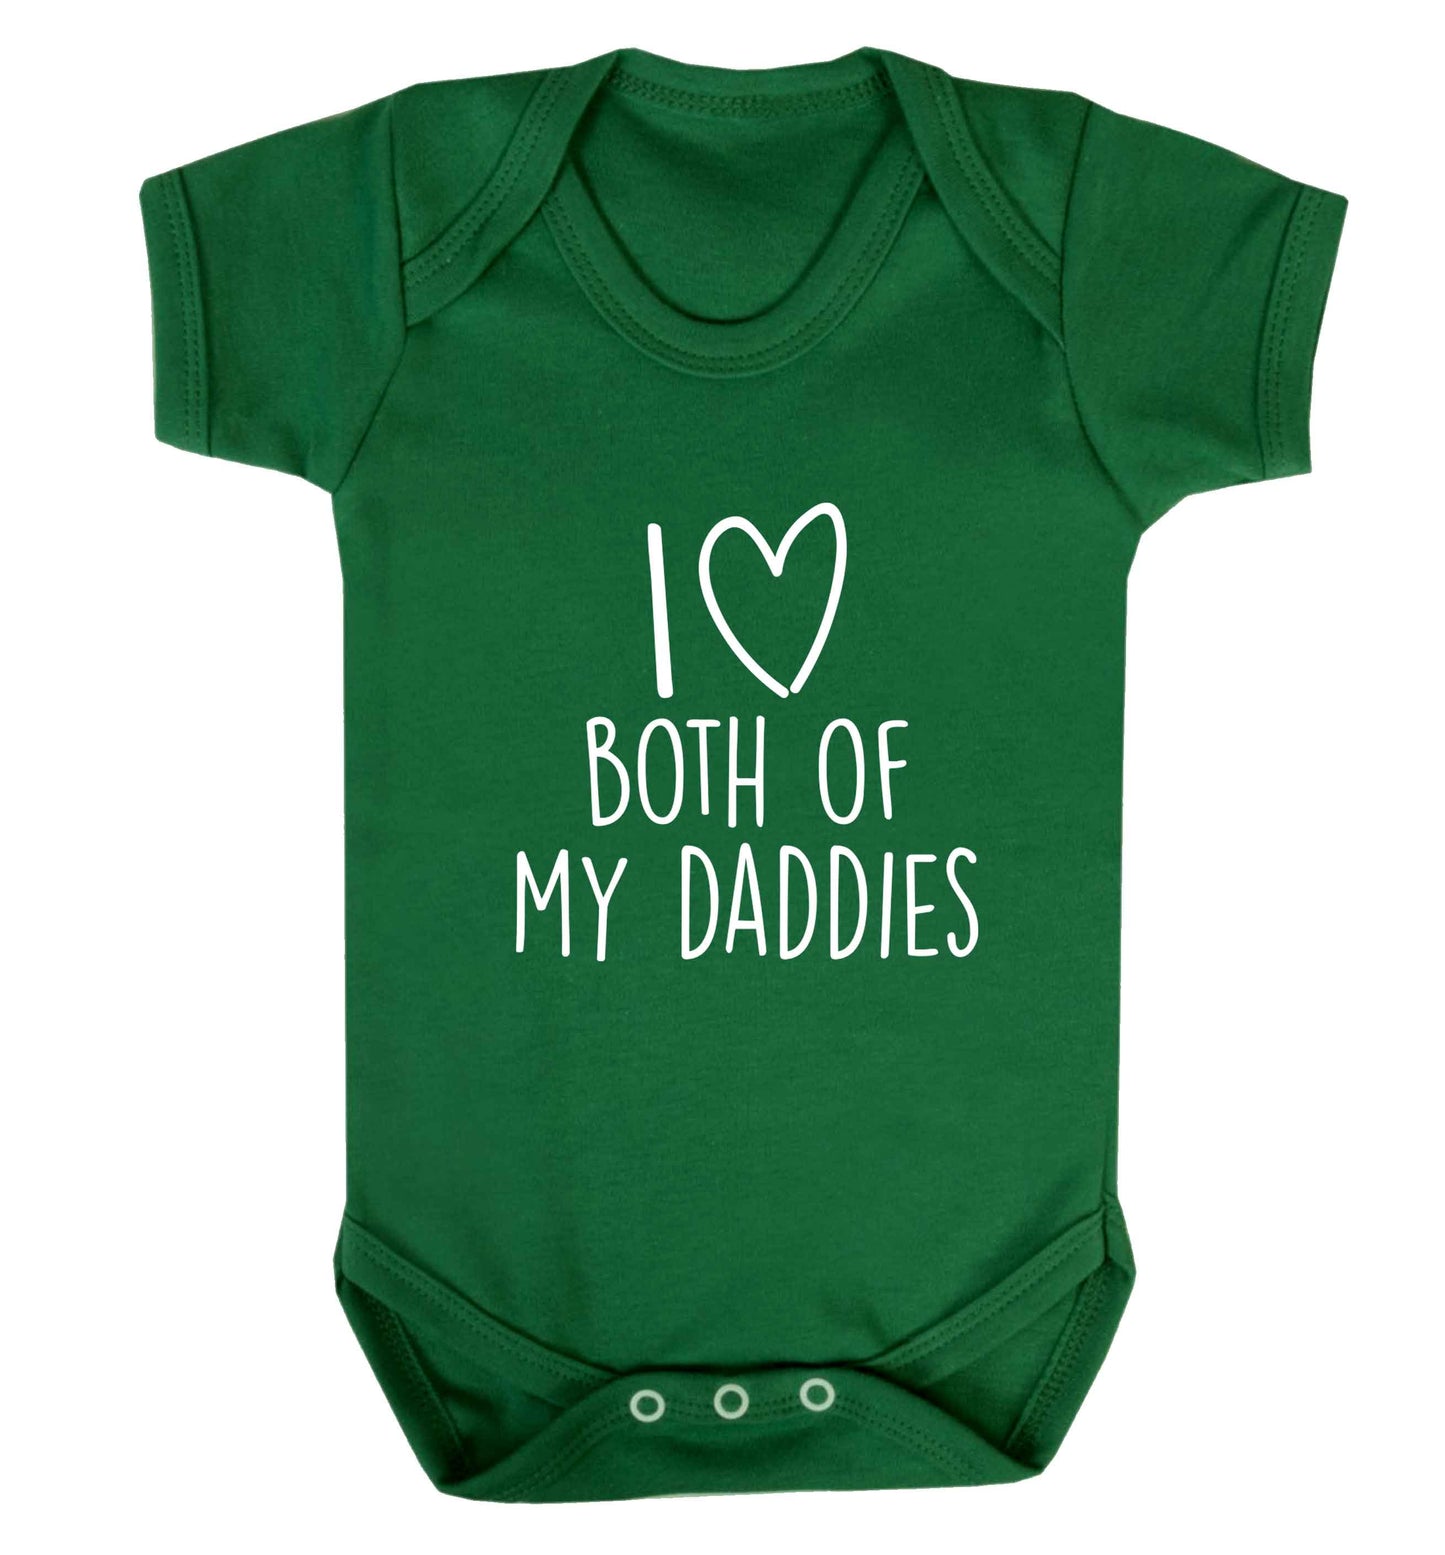 I love both of my daddies baby vest green 18-24 months